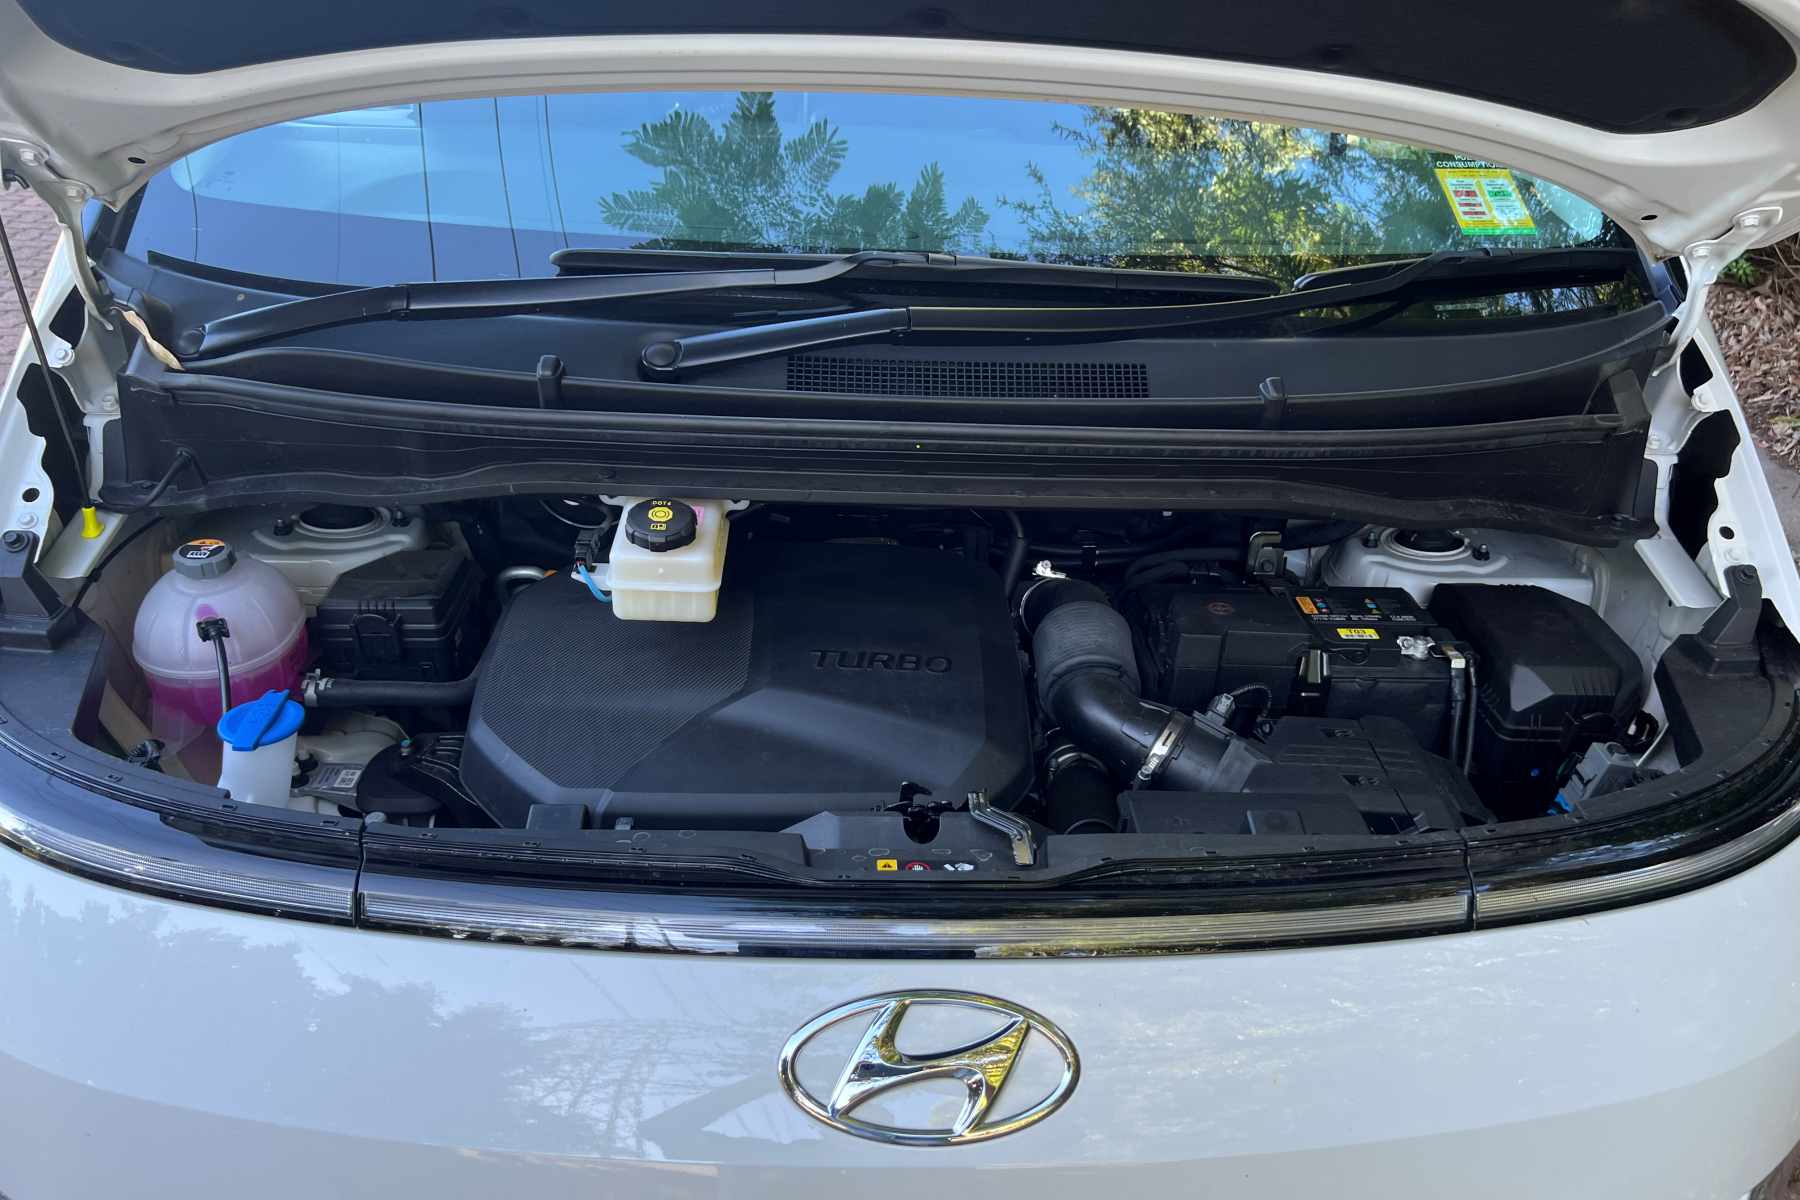 Hyundai Staria 8 seat 2.2 litre diesel engine